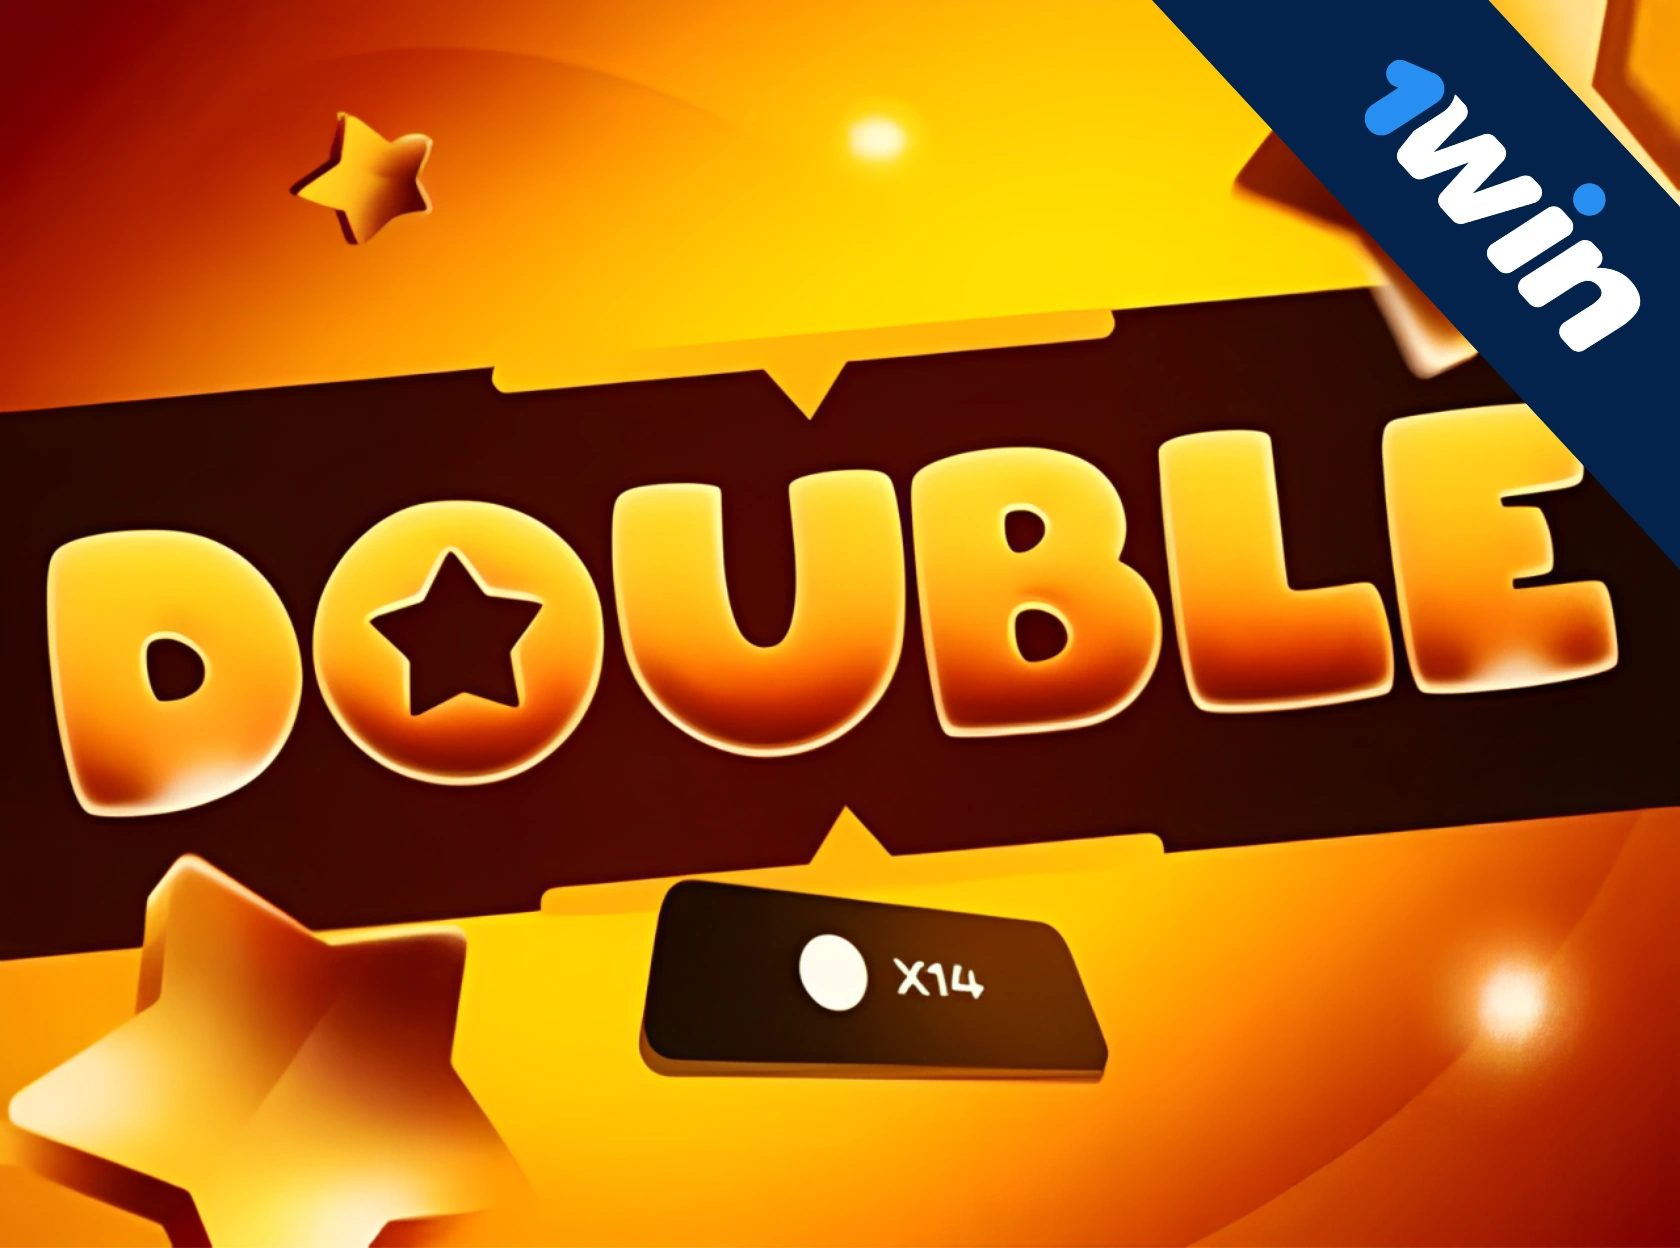 Double 1win एक नया विशेष गेम है!